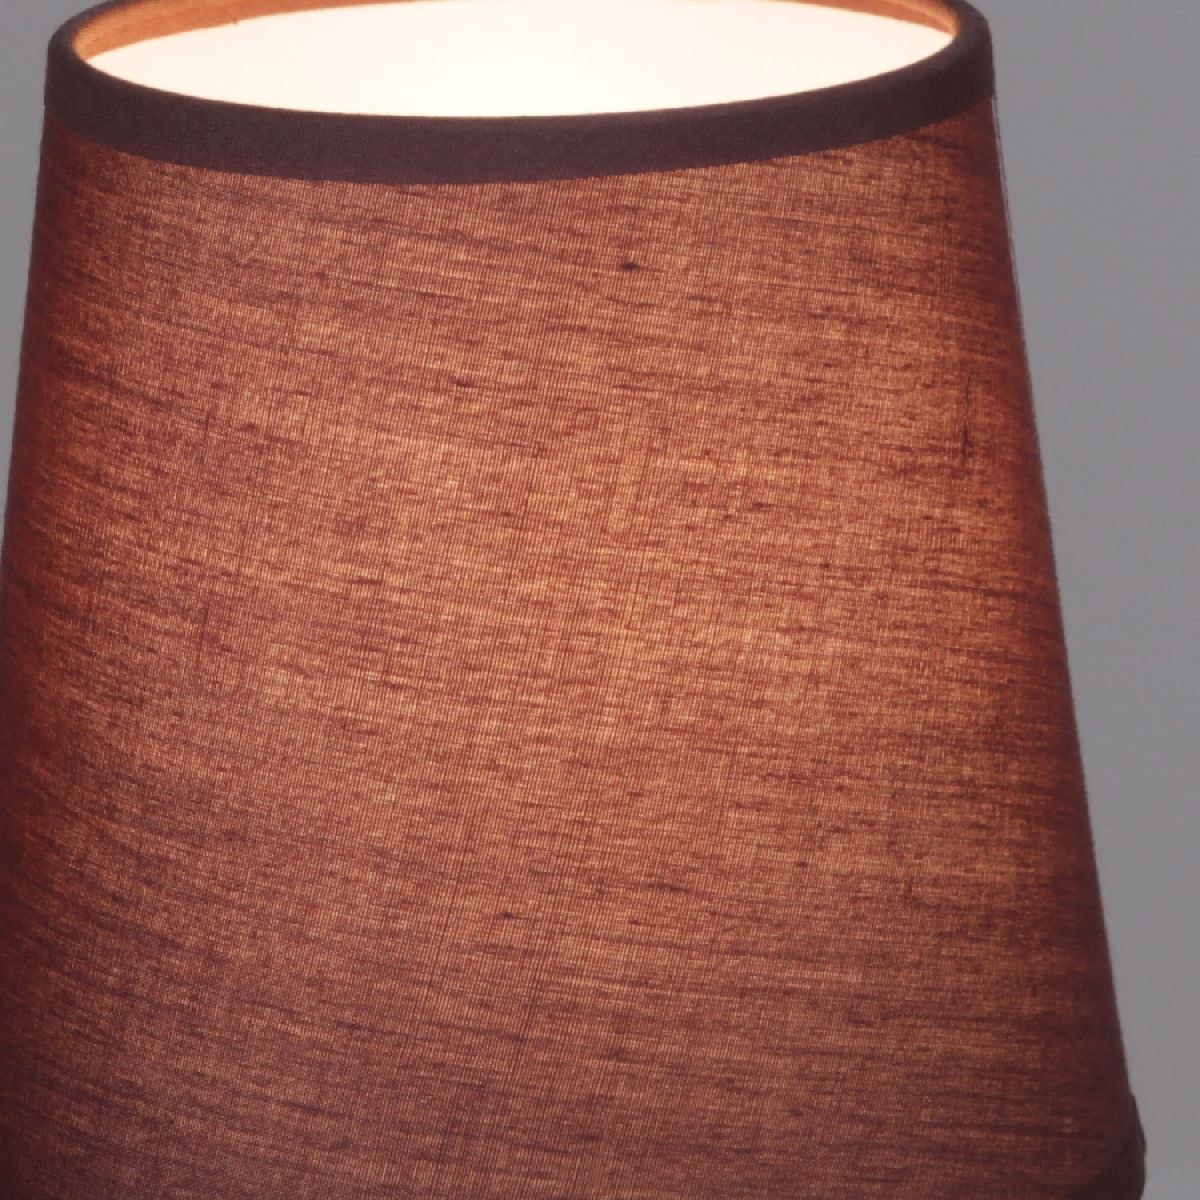 Настольная лампа Reluce 96201-0.7-01 dark brown